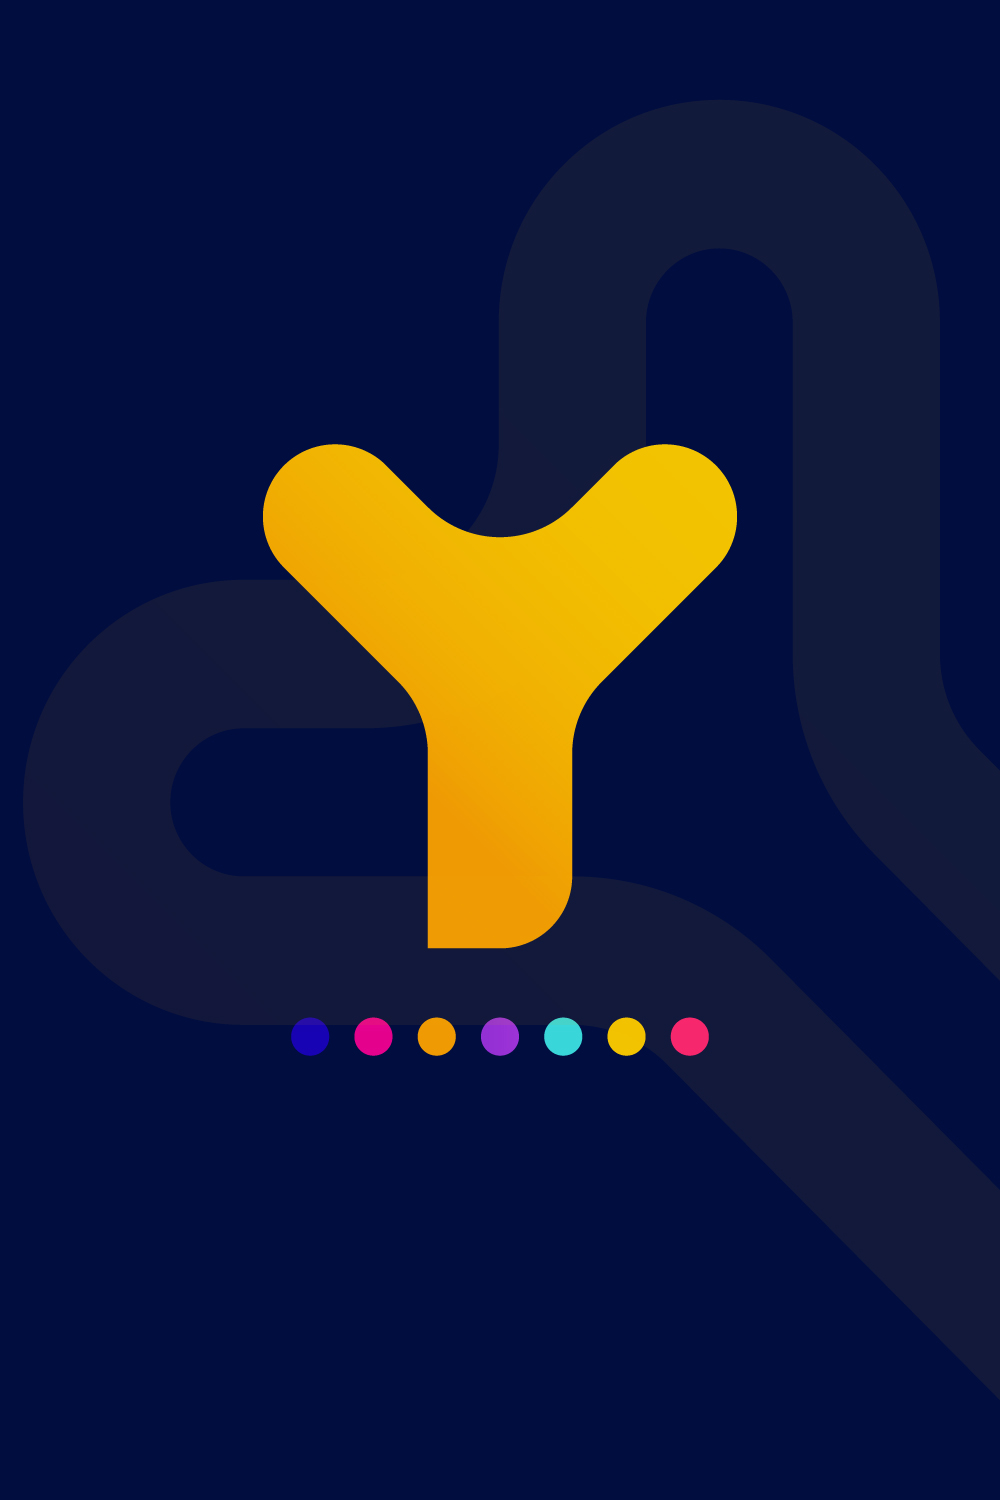 Y Letter Logo pinterest image.